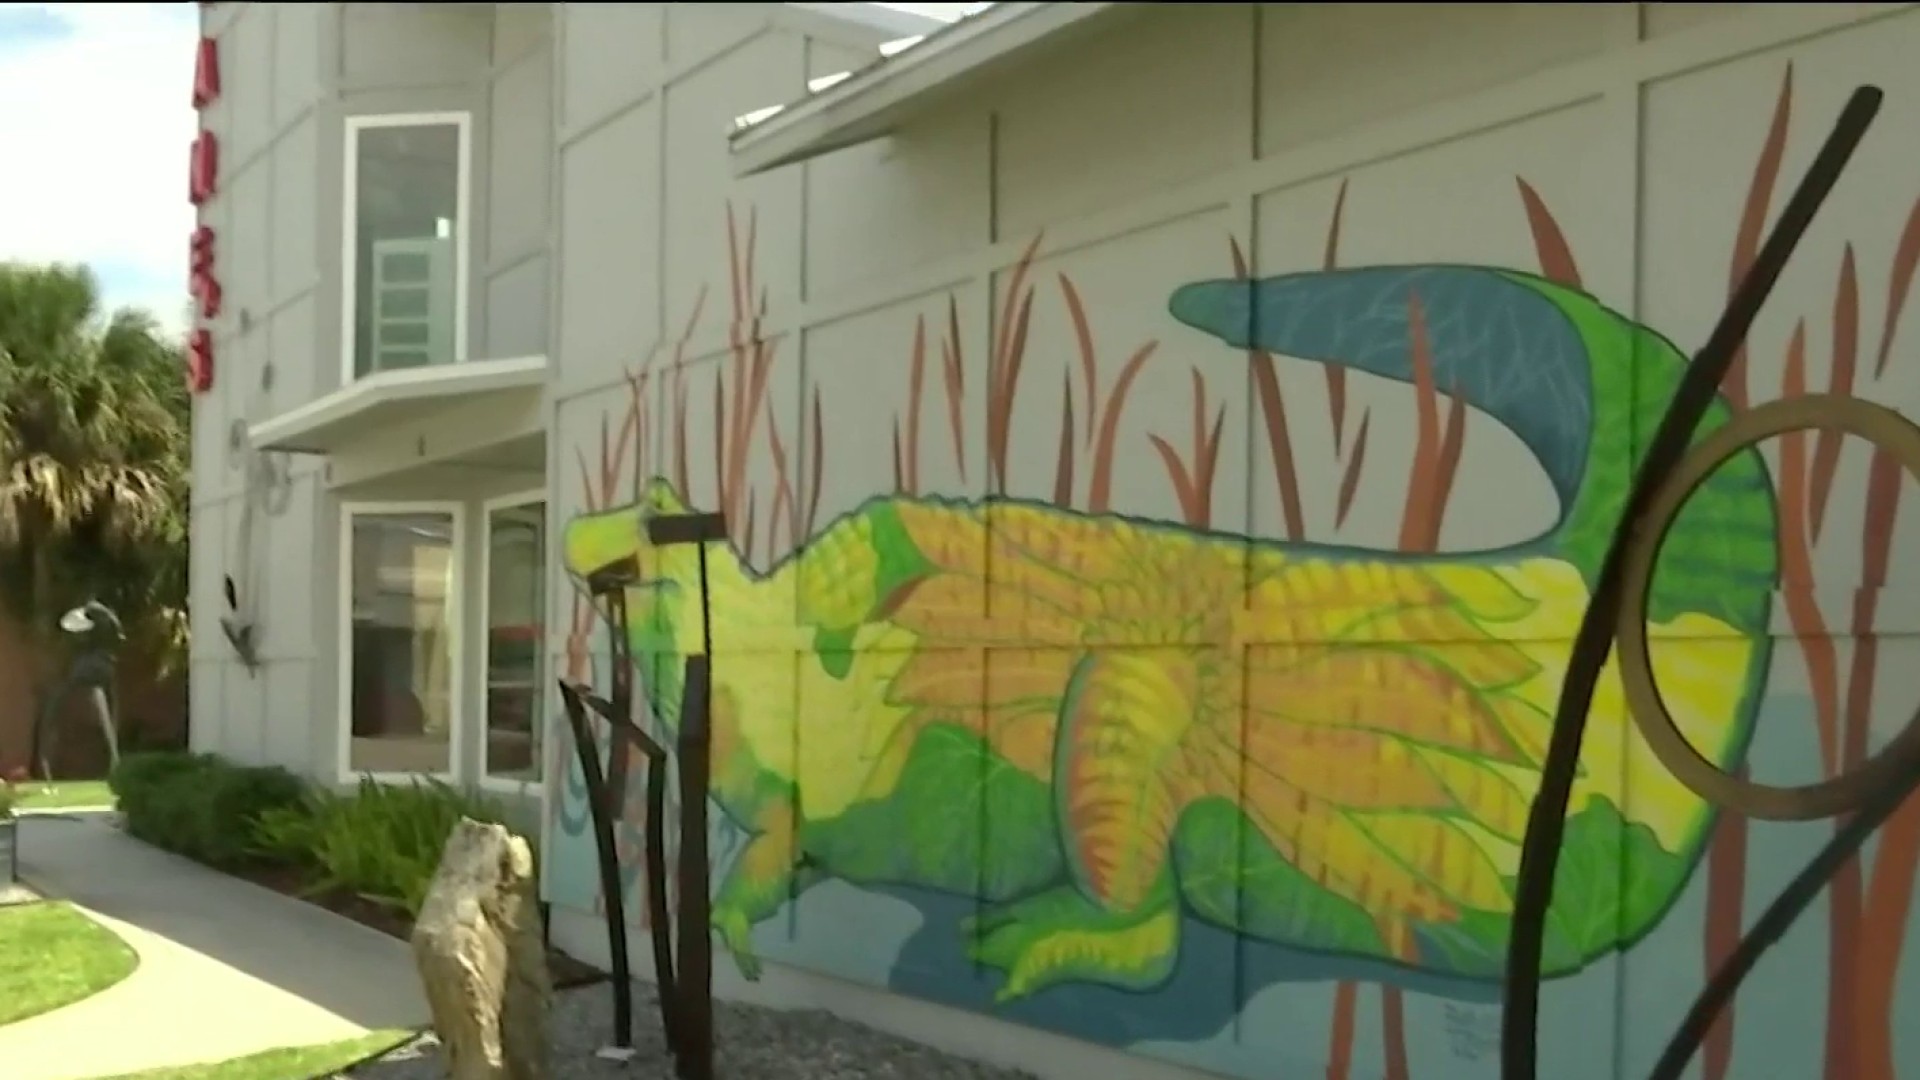 Downtown Palm Beach Gardens seeking artists for new mural wall